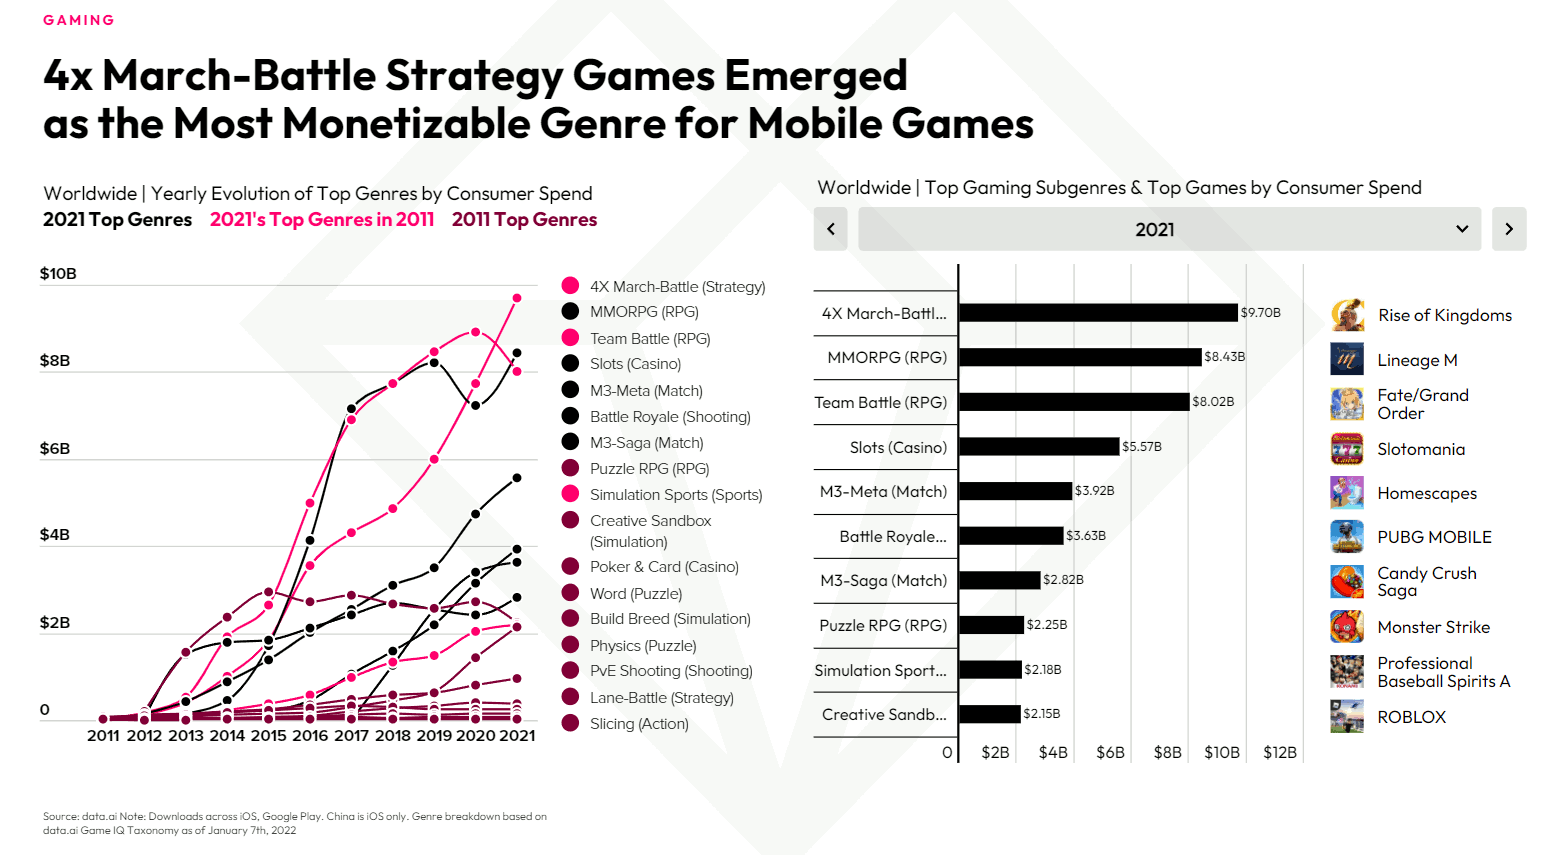 Evolution des genres de jeux selon les dépenses consommateurs